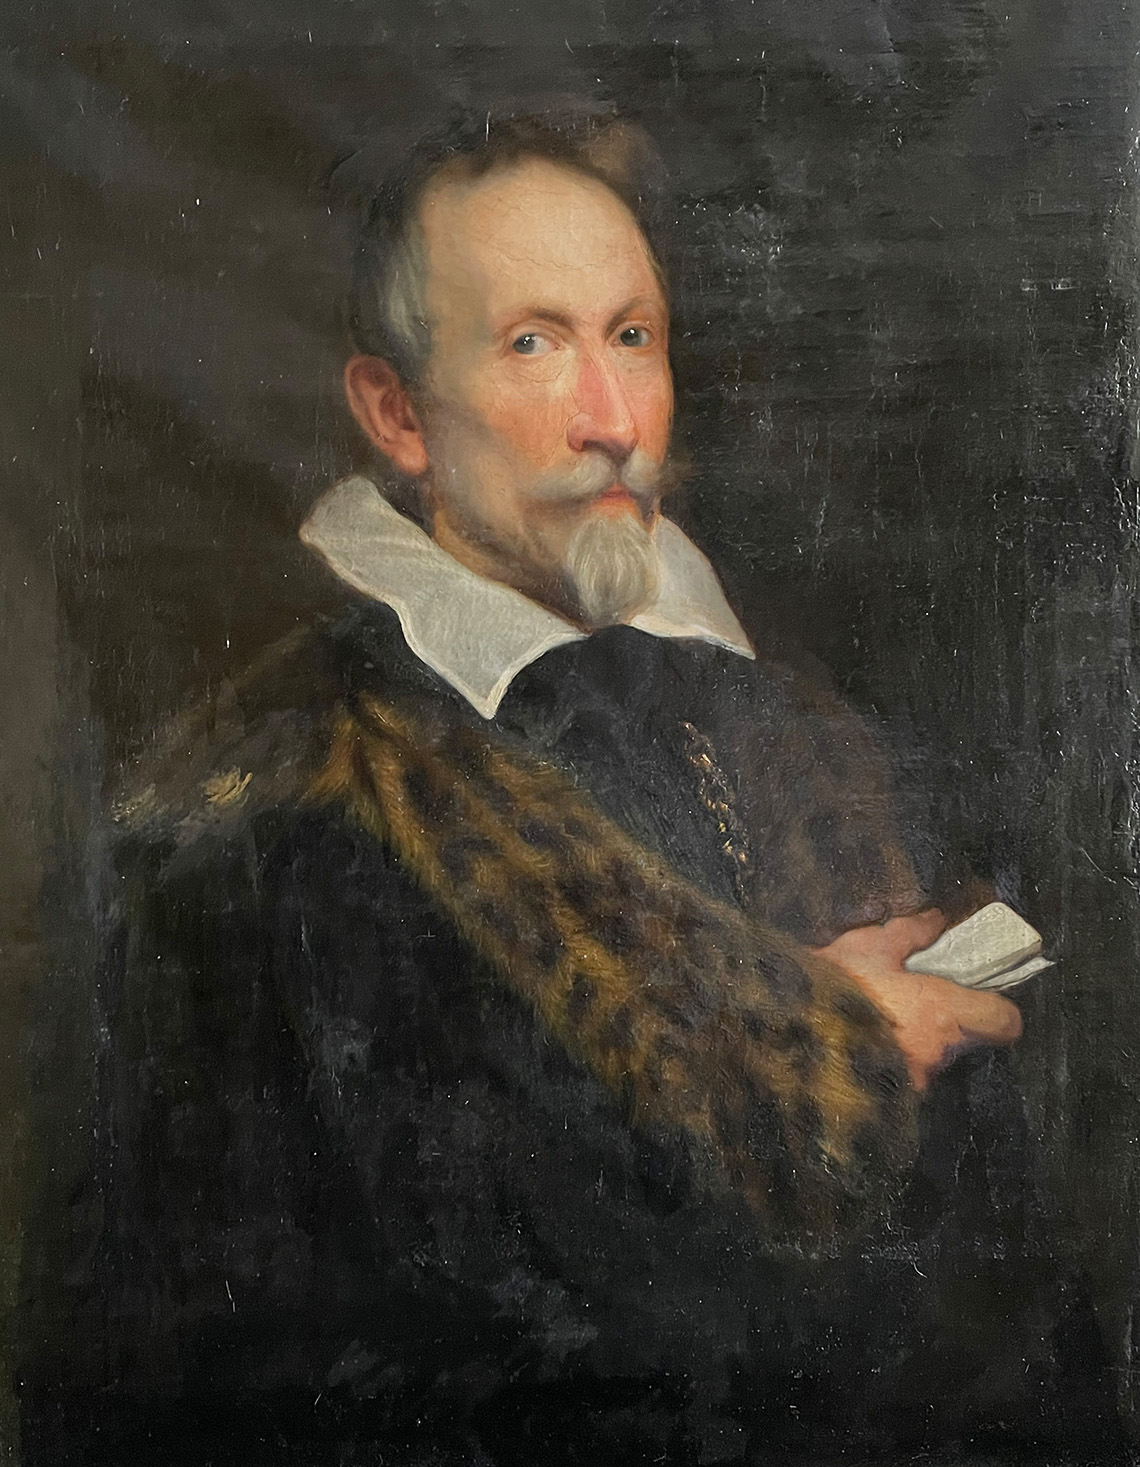 Kopie nach Antonys van Dyck "Portrait des Johann von Wowern (1632)", wohl 19 Jh., Öl/Lwd, 62 x 81